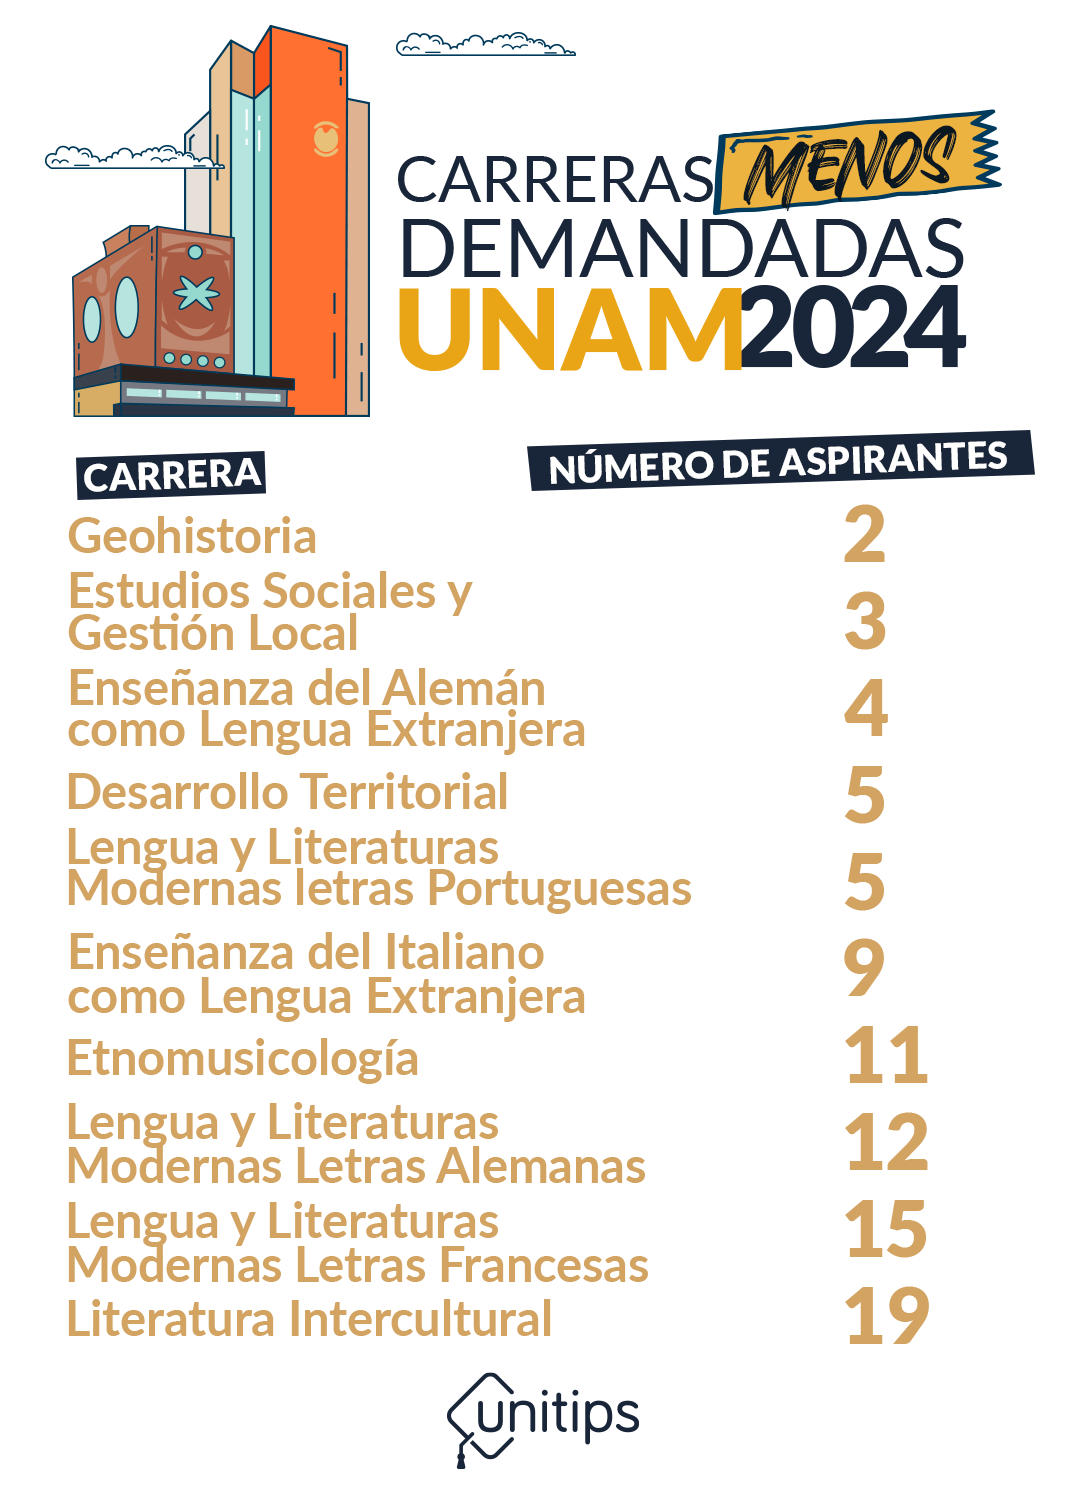 Imagen-interna-carreras-menos-demandadas-UNAM-2024